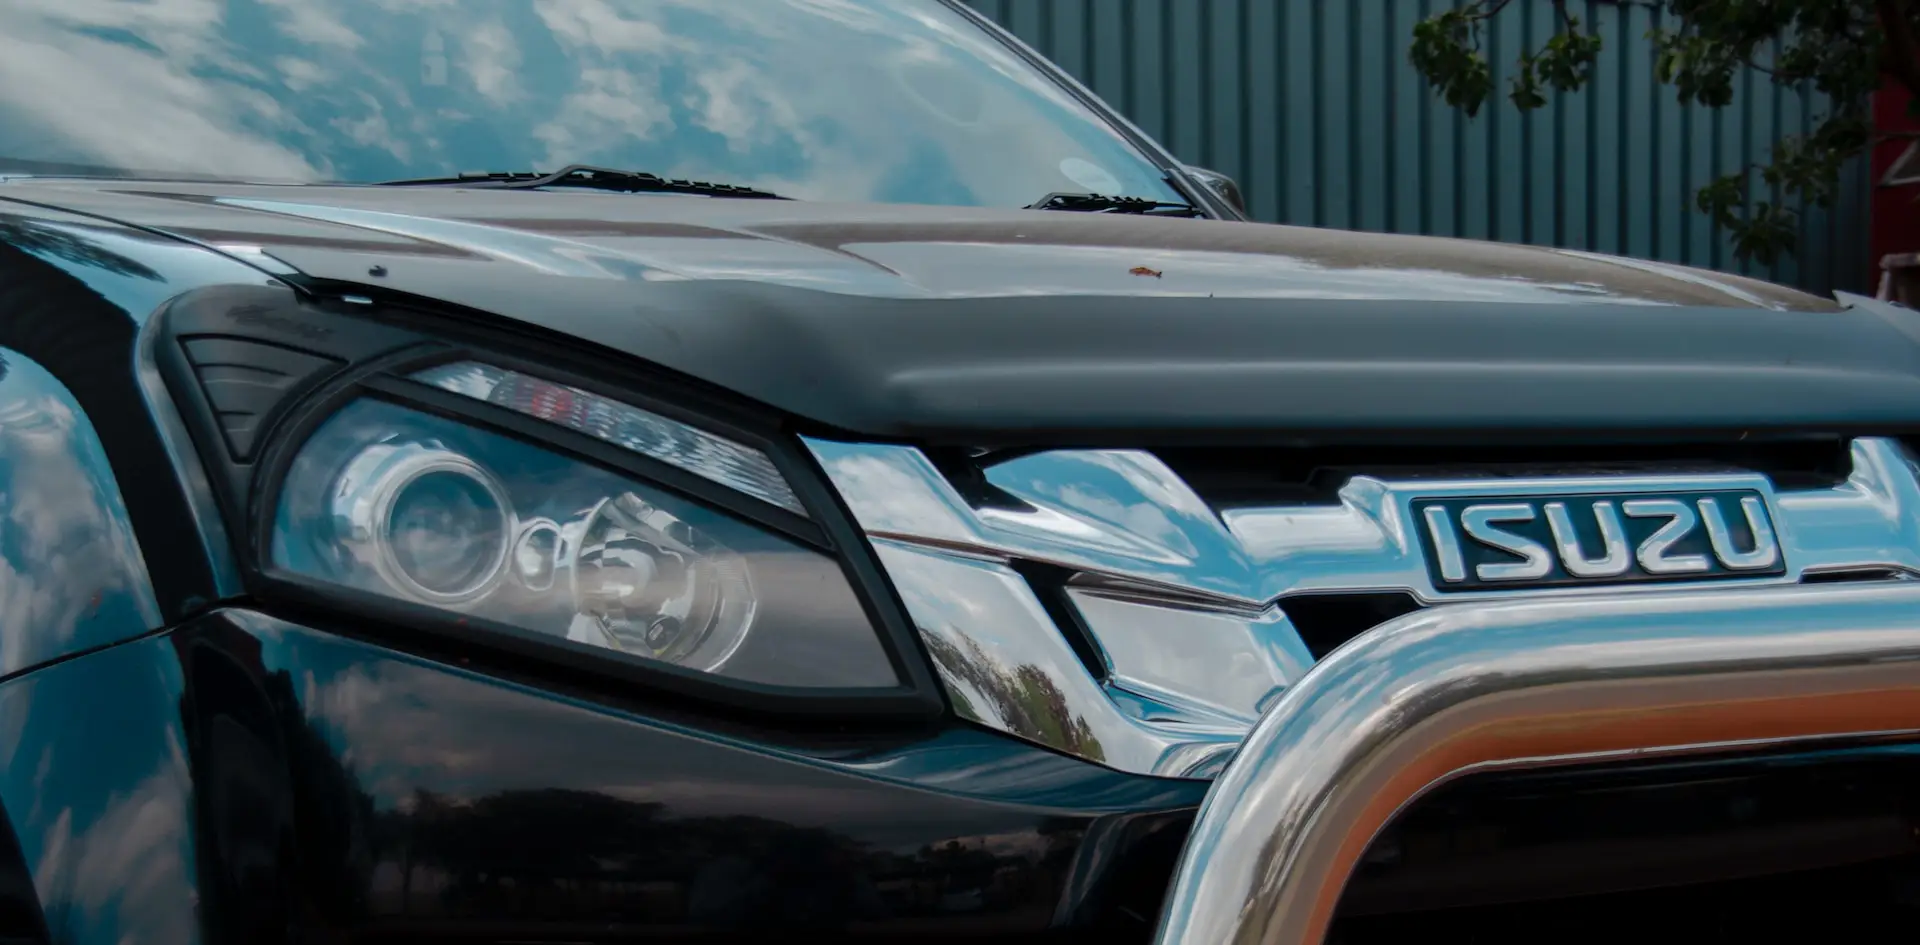 close up of an isuzu car logo, headlight and front bumper